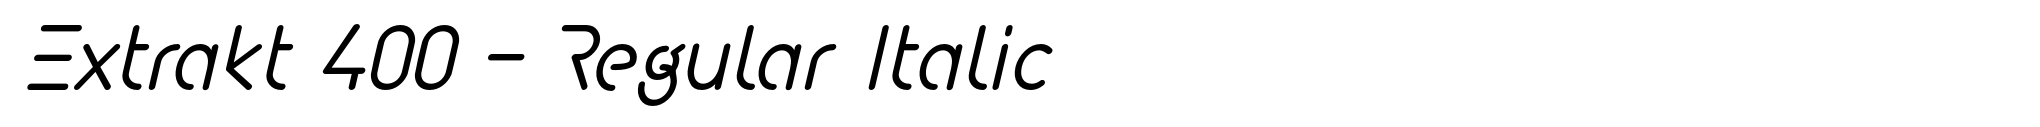 Extrakt 400 - Regular Italic image